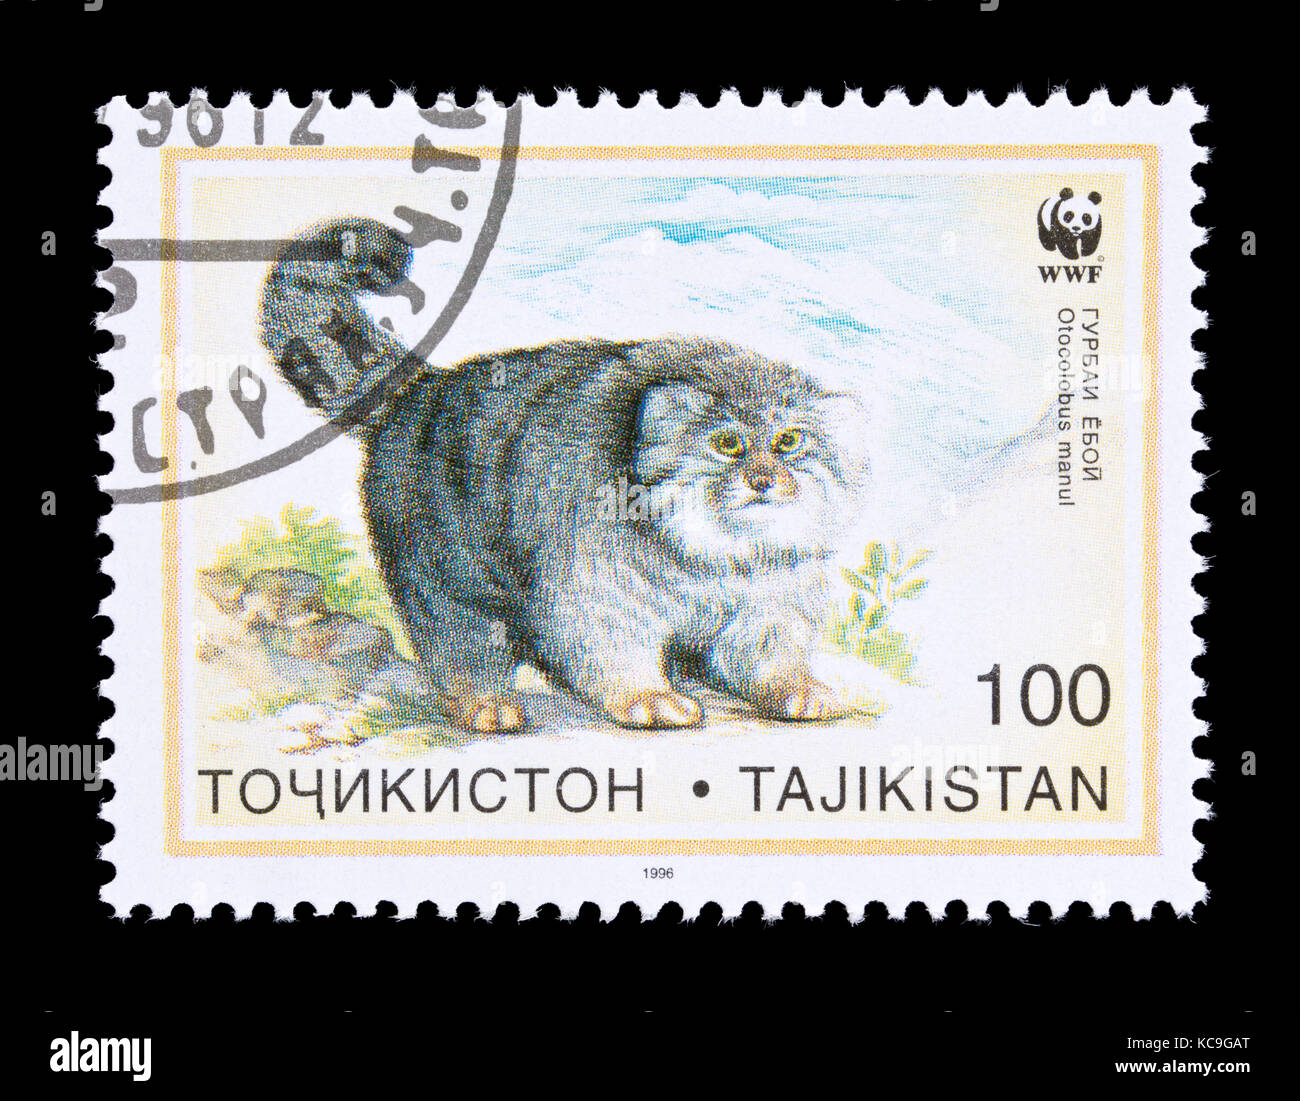 Francobollo dal Tagikistan raffigurante una Pallas's Cat (Otocolobus manul) Foto Stock